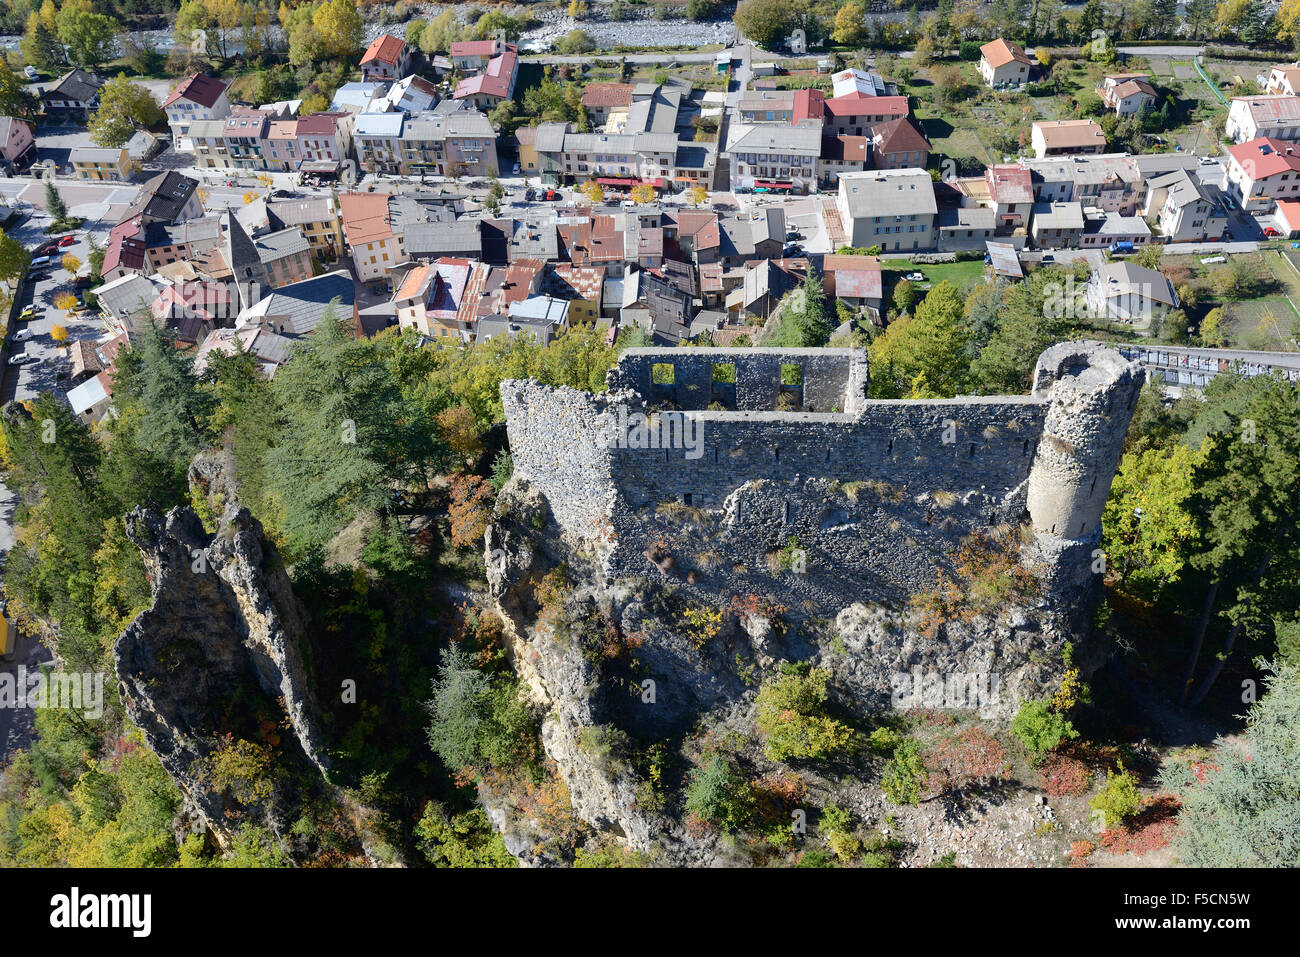 VUE AÉRIENNE.Ruines d'un château médiéval surplombant le village de Guilleraumes sur la rive gauche du Var.Alpes-Maritimes, France. Banque D'Images